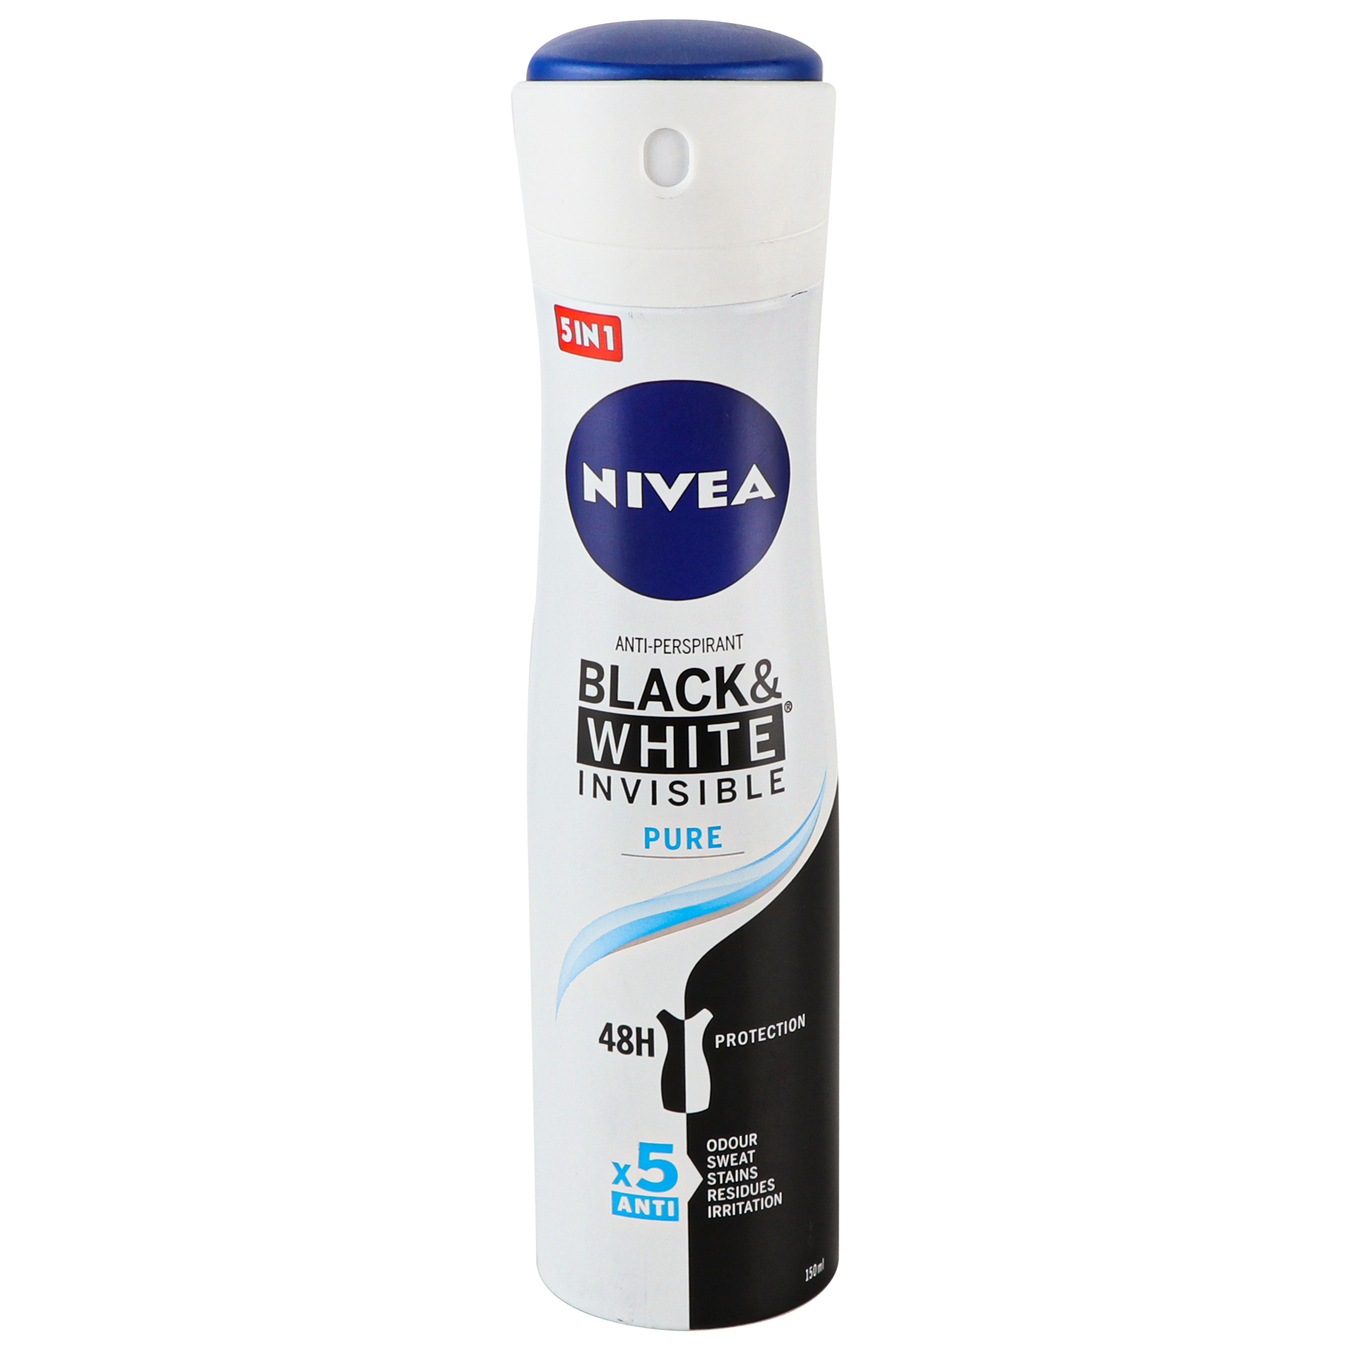 Deodorant Nivea for women Invisible Pure Invisible Protection spray 150ml 5